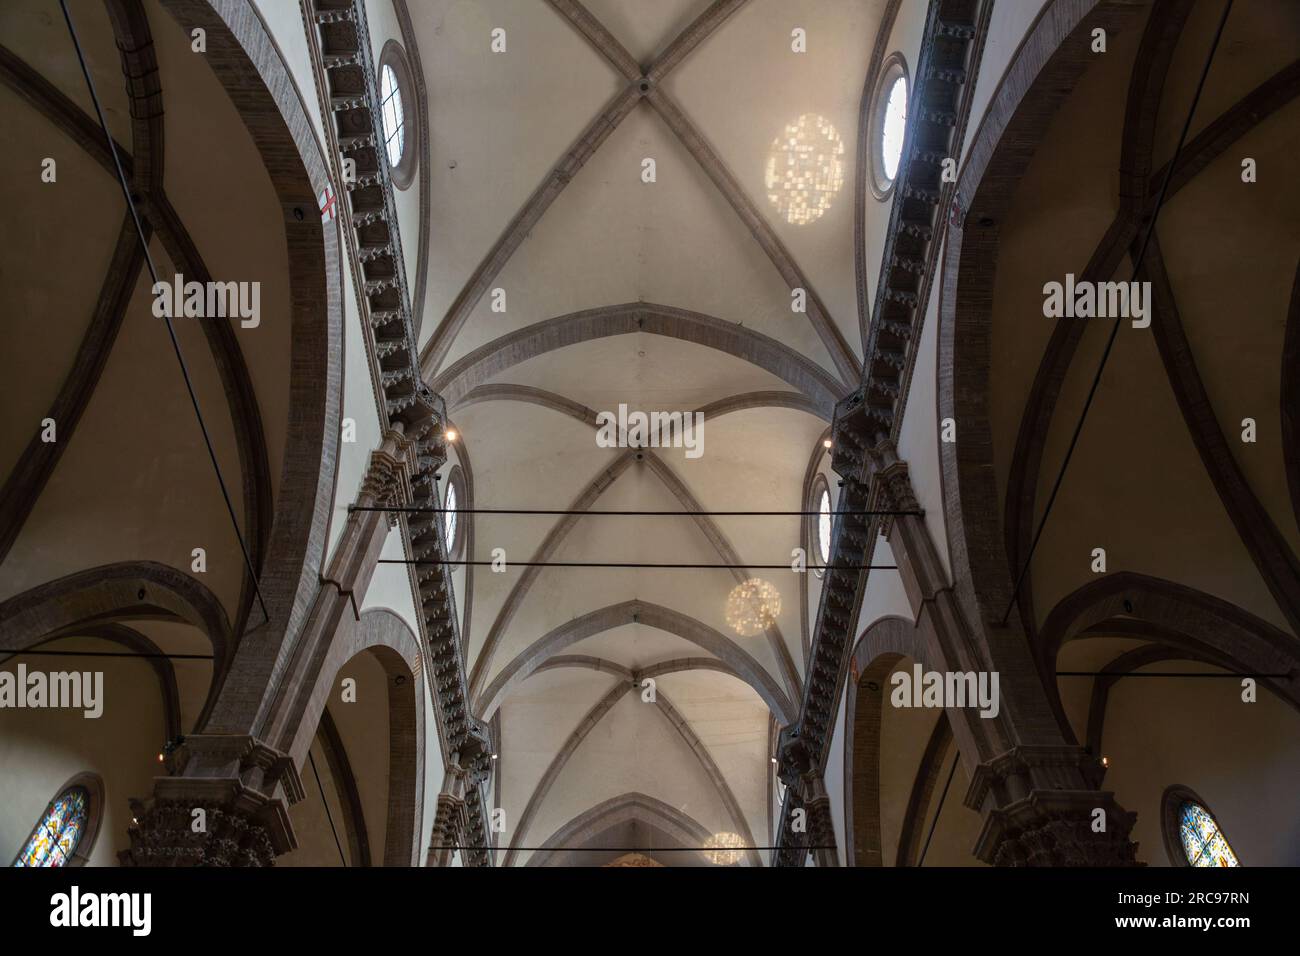 Dettaglio interno dal Duomo di Firenze, Cattedrale di Santa Maria del Fiore a Firenze. L'edificio è stato completato nel 1436. Foto Stock